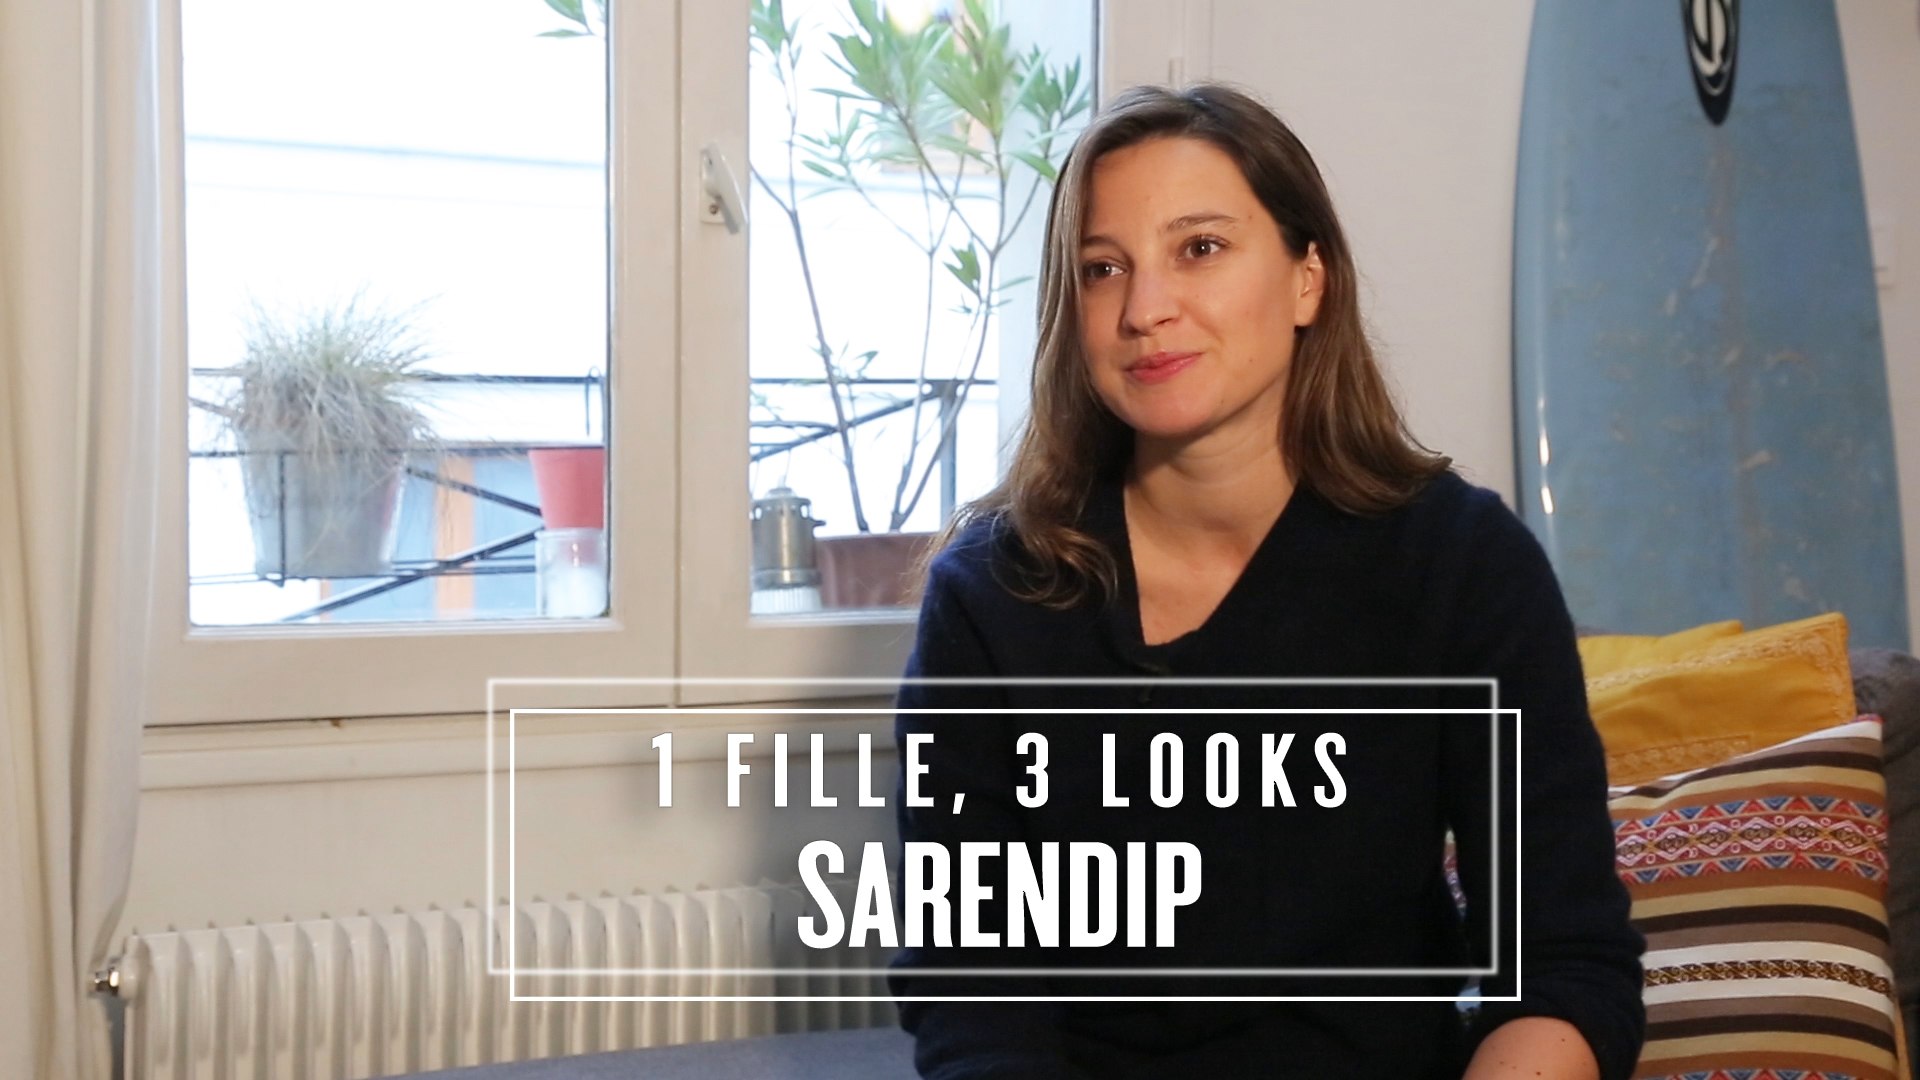 1 fille, 3 looks avec Maud Bonnet, la créatrice de la marque Sarendip -  Vidéo Dailymotion